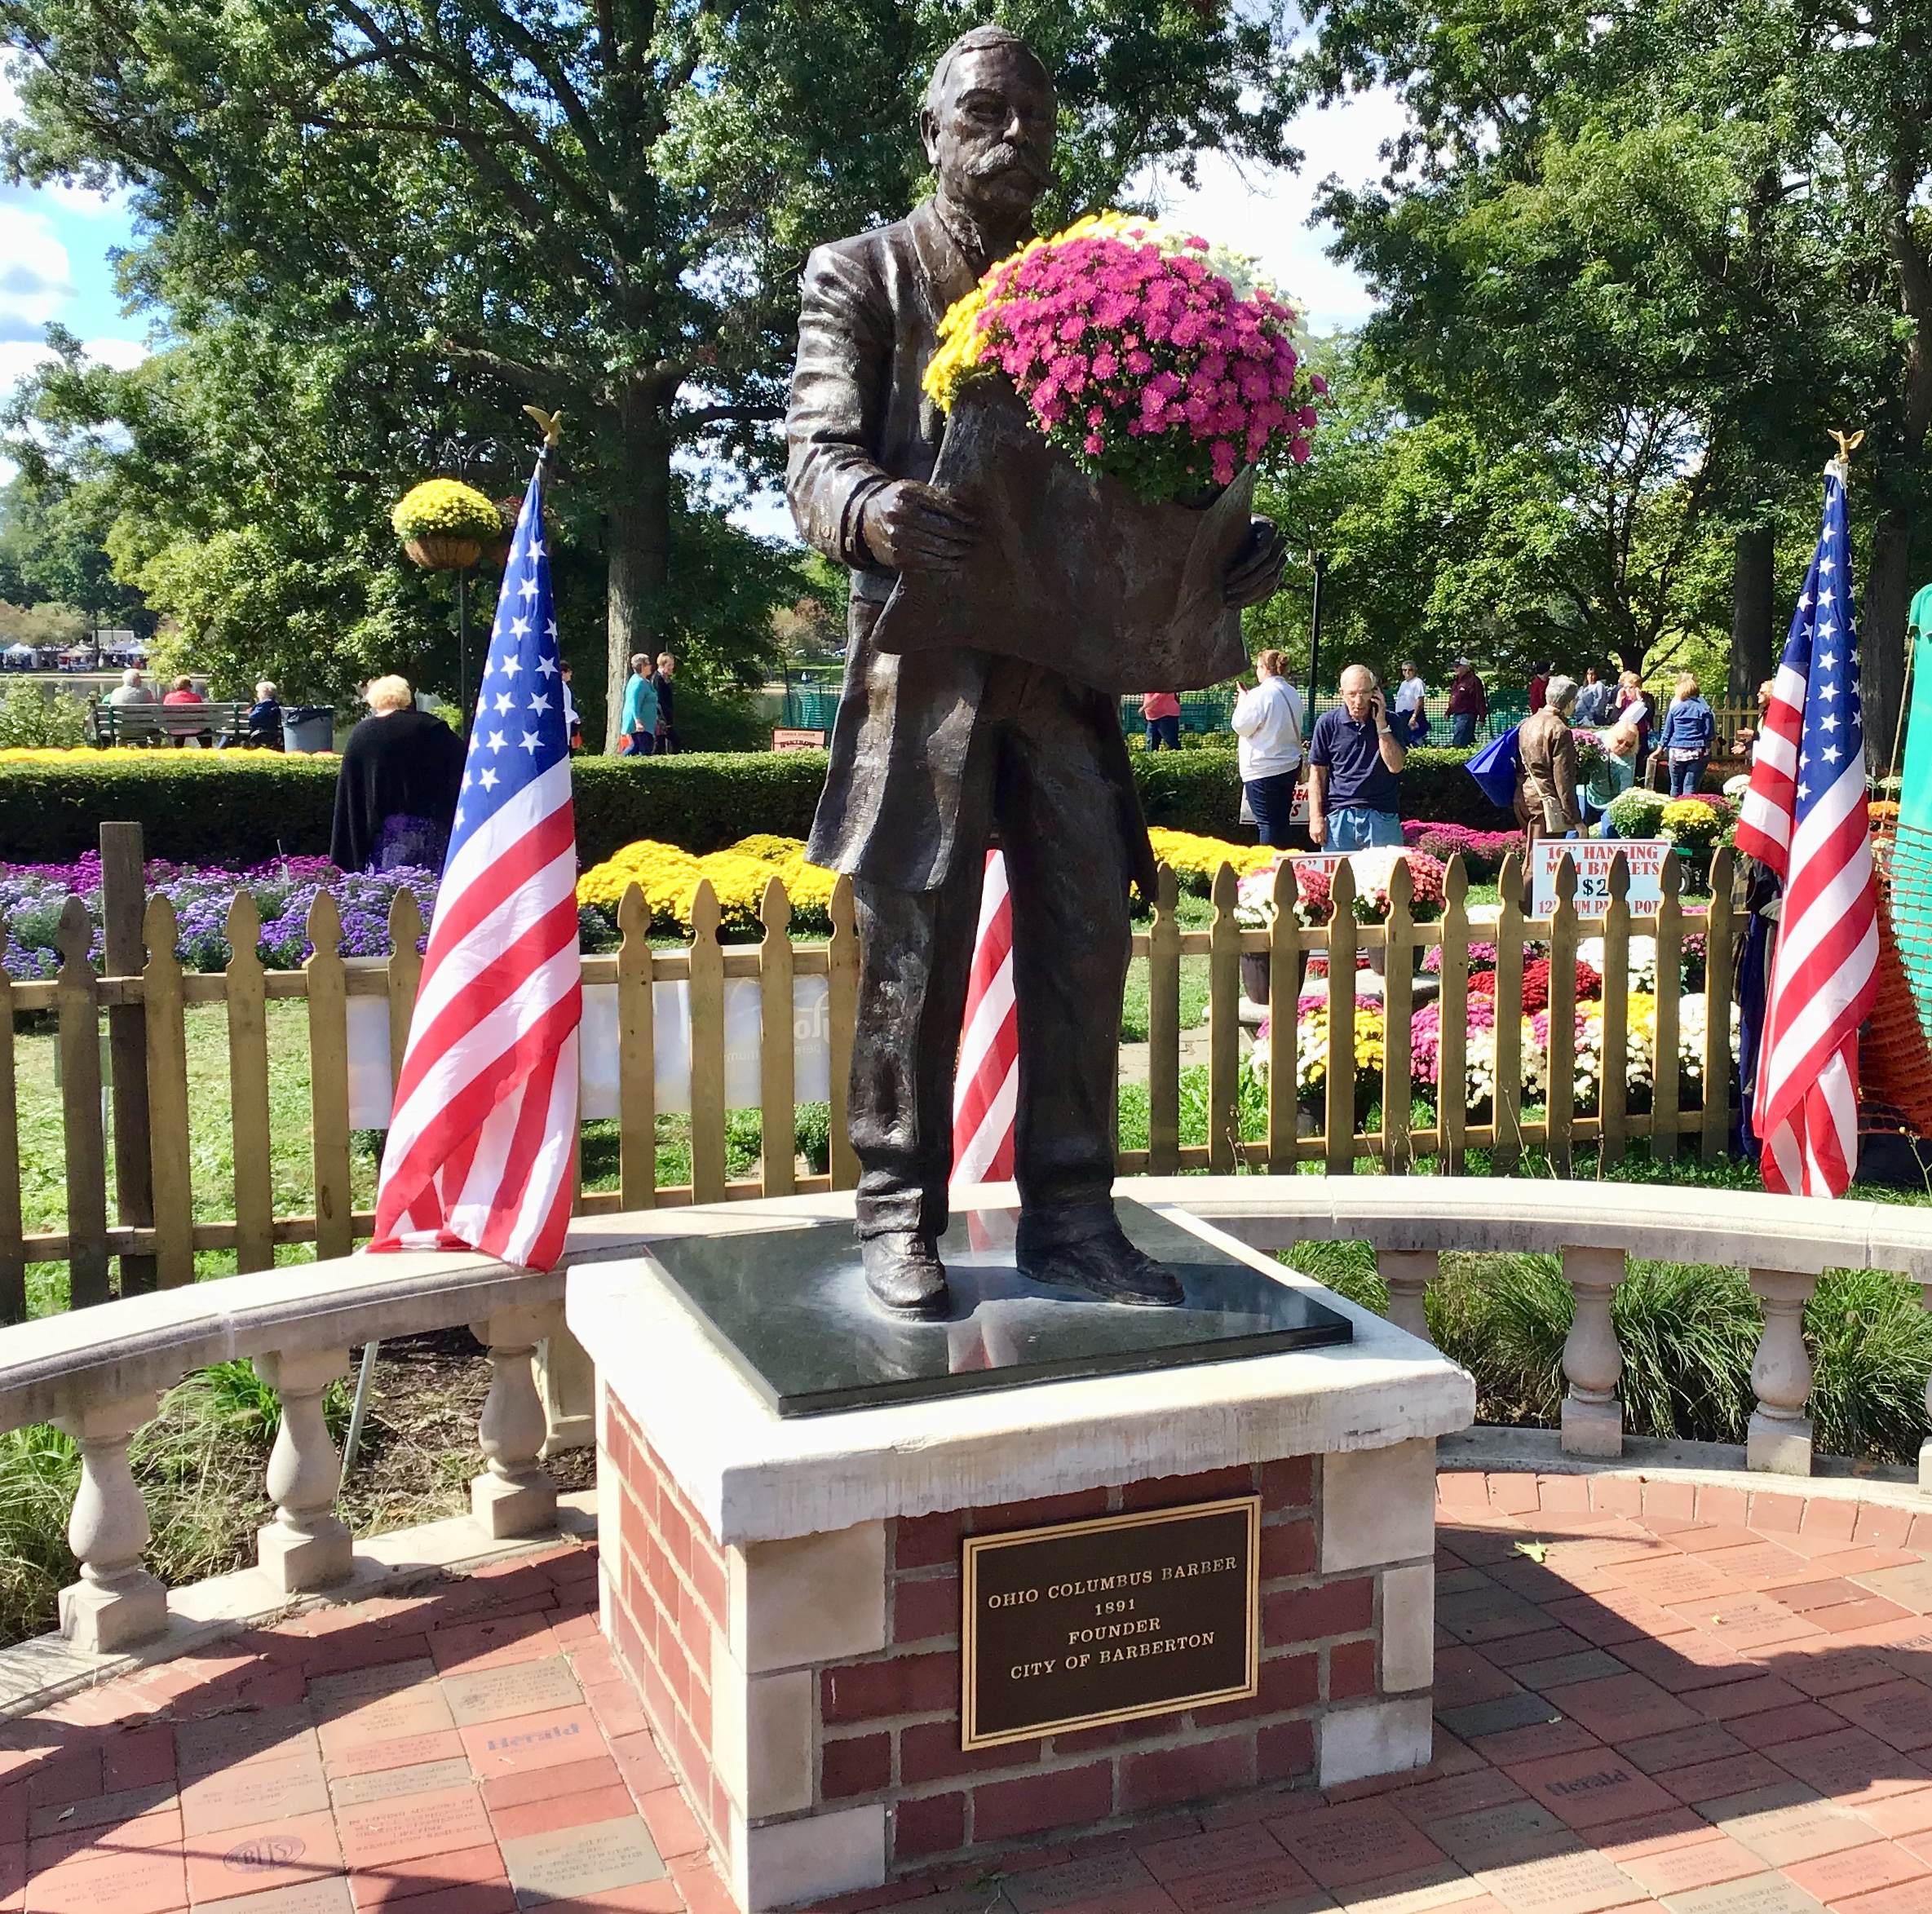 Ohio Columbus Barber statue in Barberton, OH